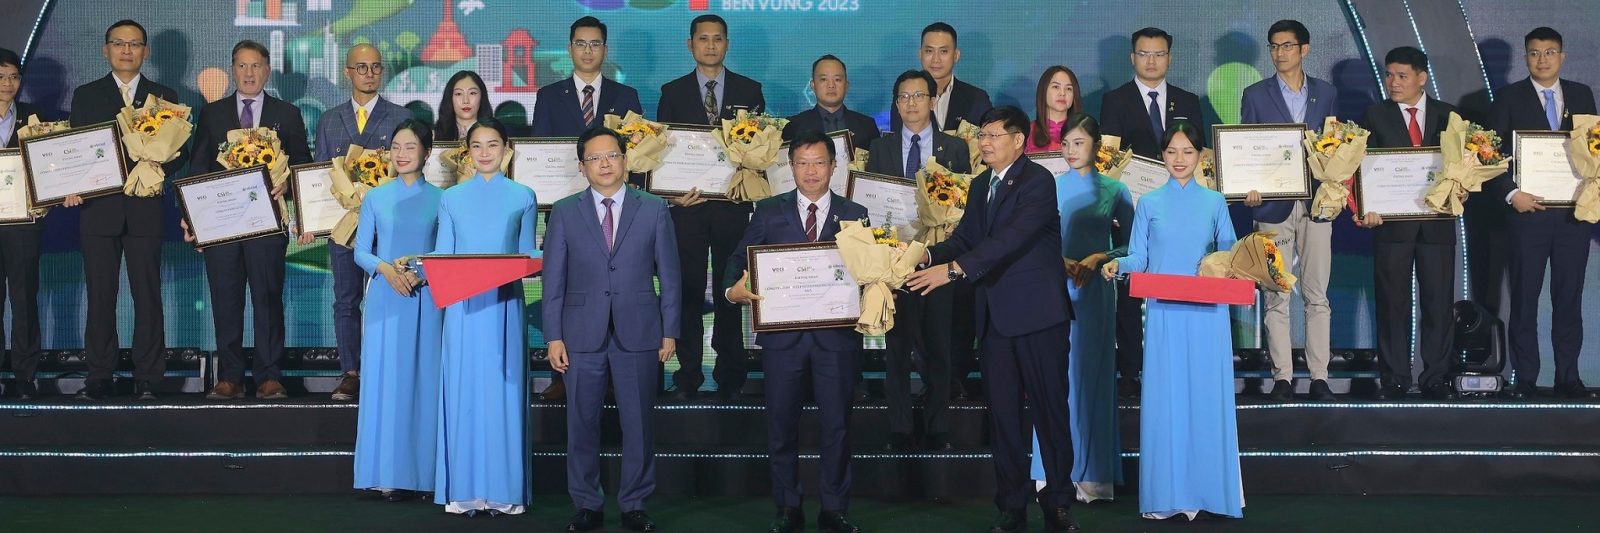 Ông Lương Xuân Mẫn – Phó Tổng Giám đốc Tập đoàn Phenikaa đại diện nhận bảng vinh danh từ Ban Tổ chức